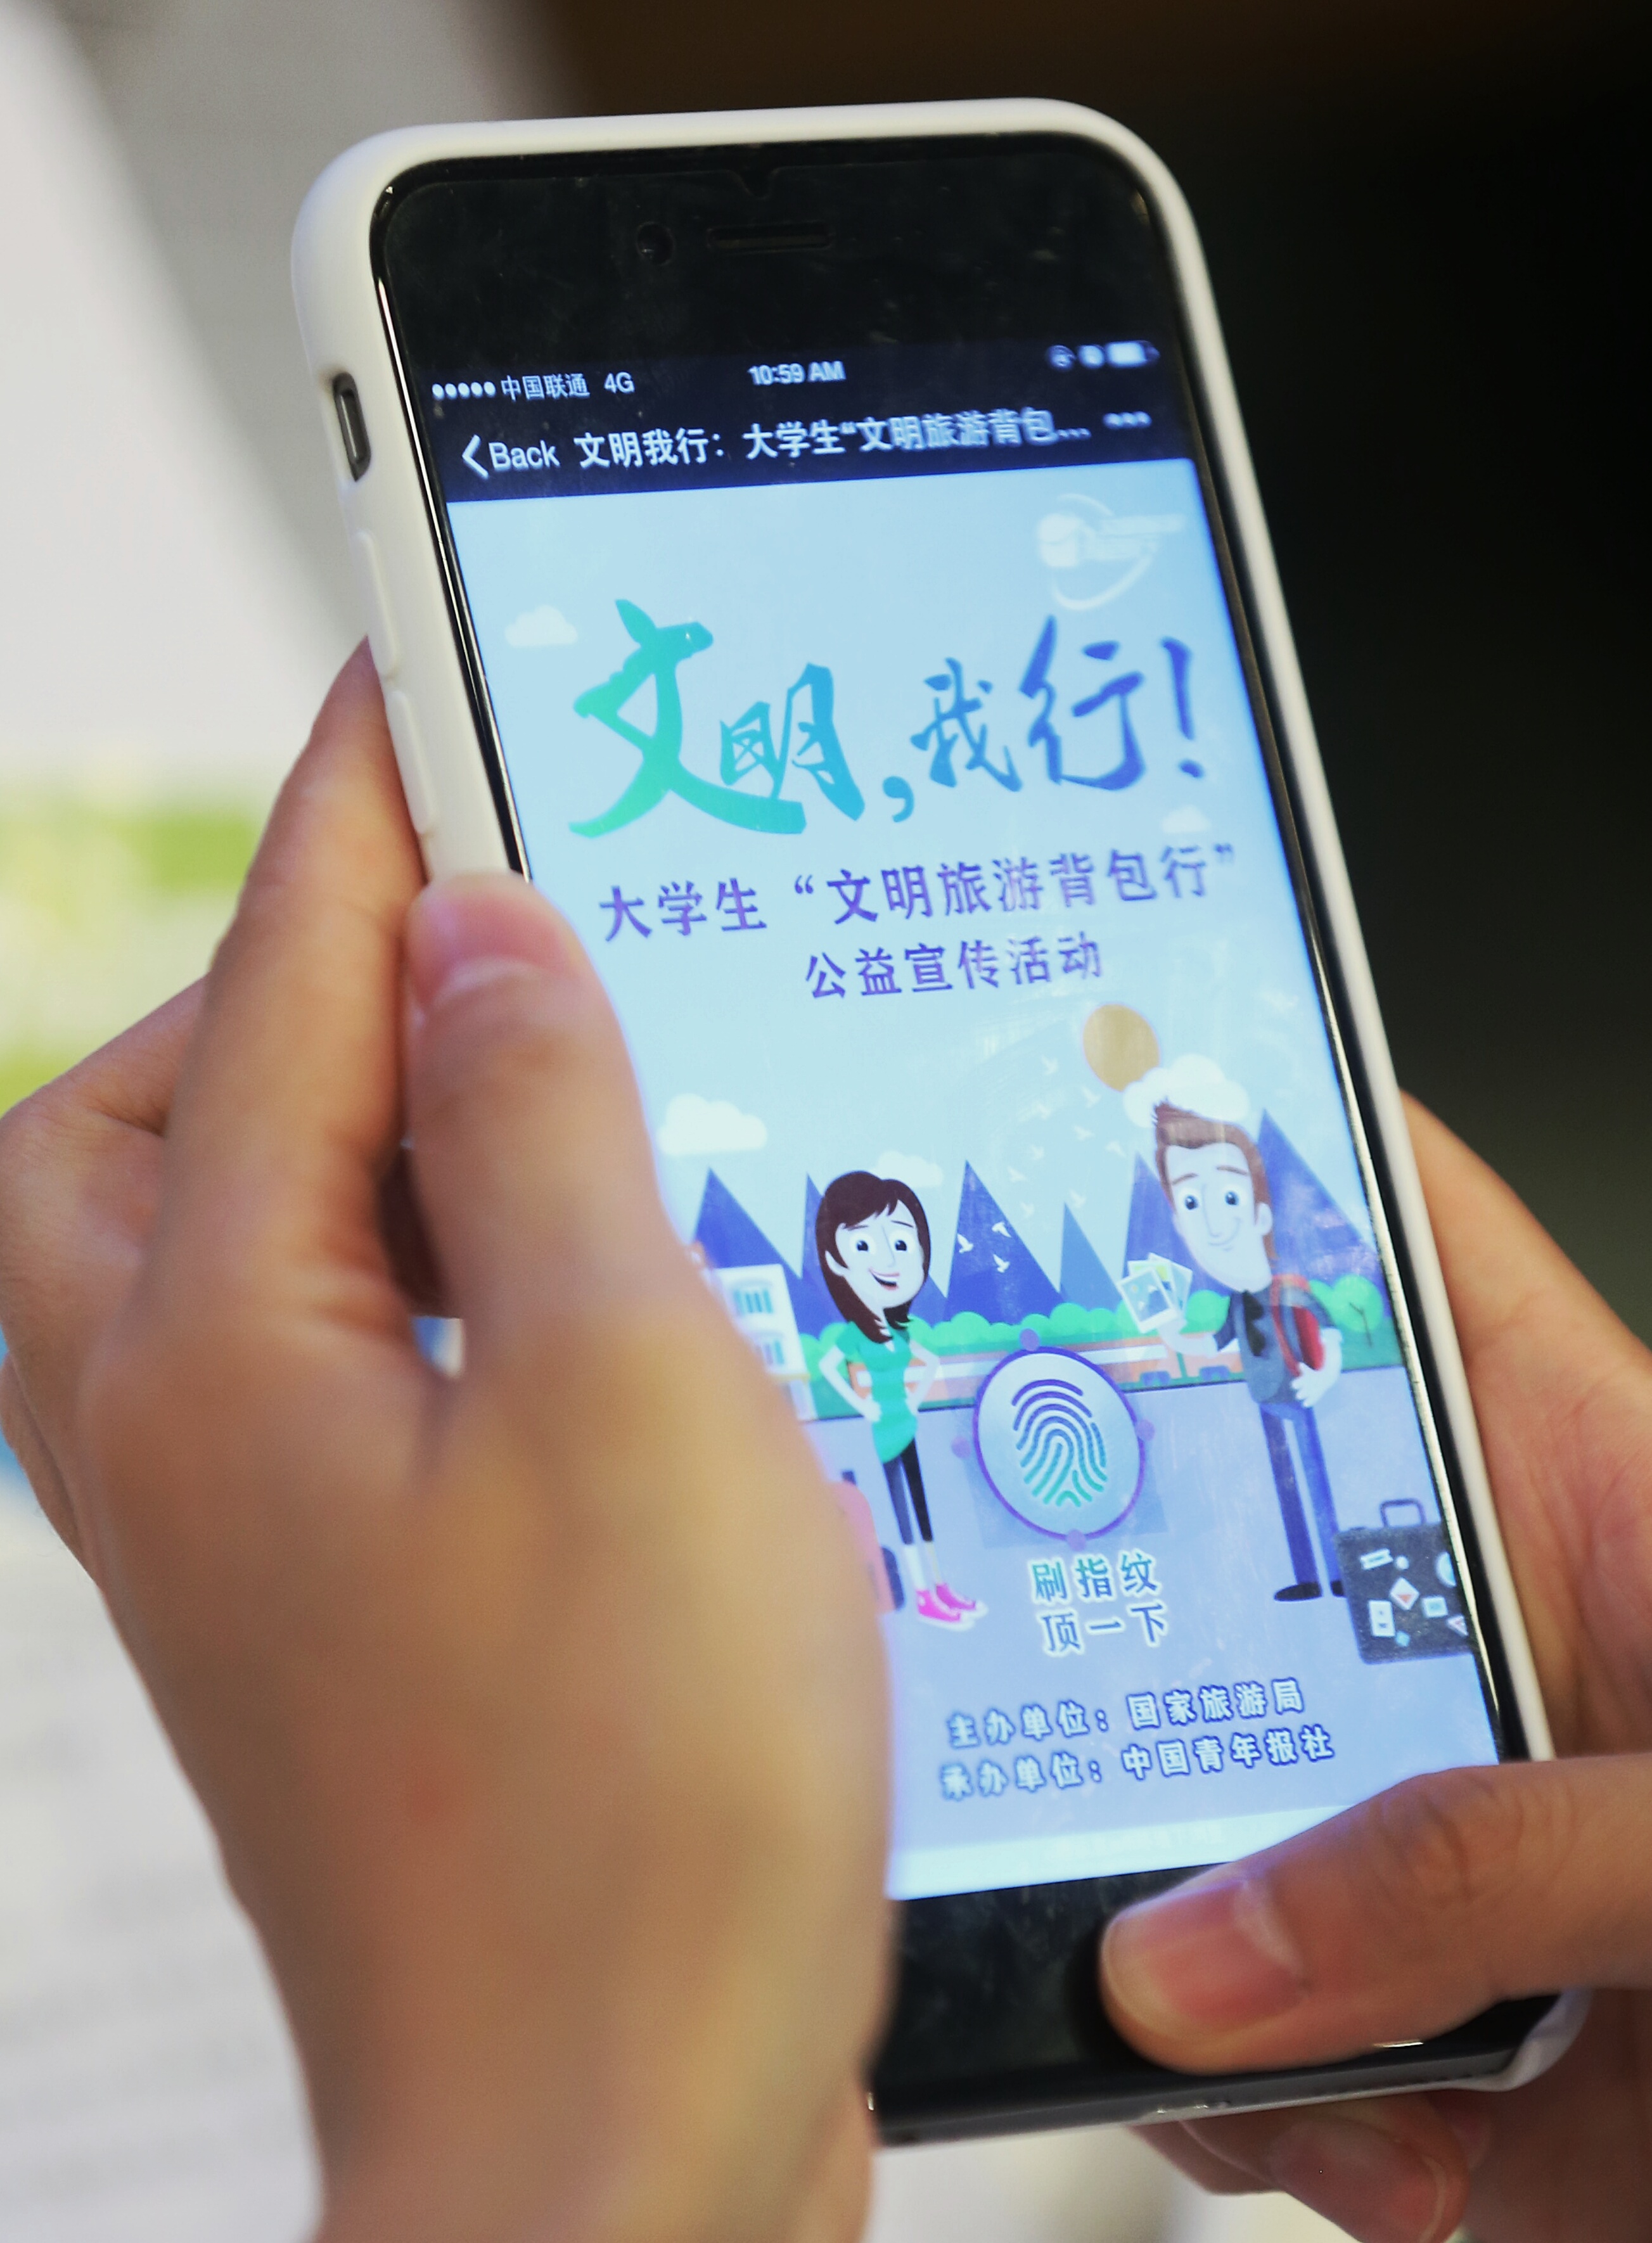 [三體] 中國「青少年模式」網路平台剩動畫和兒歌